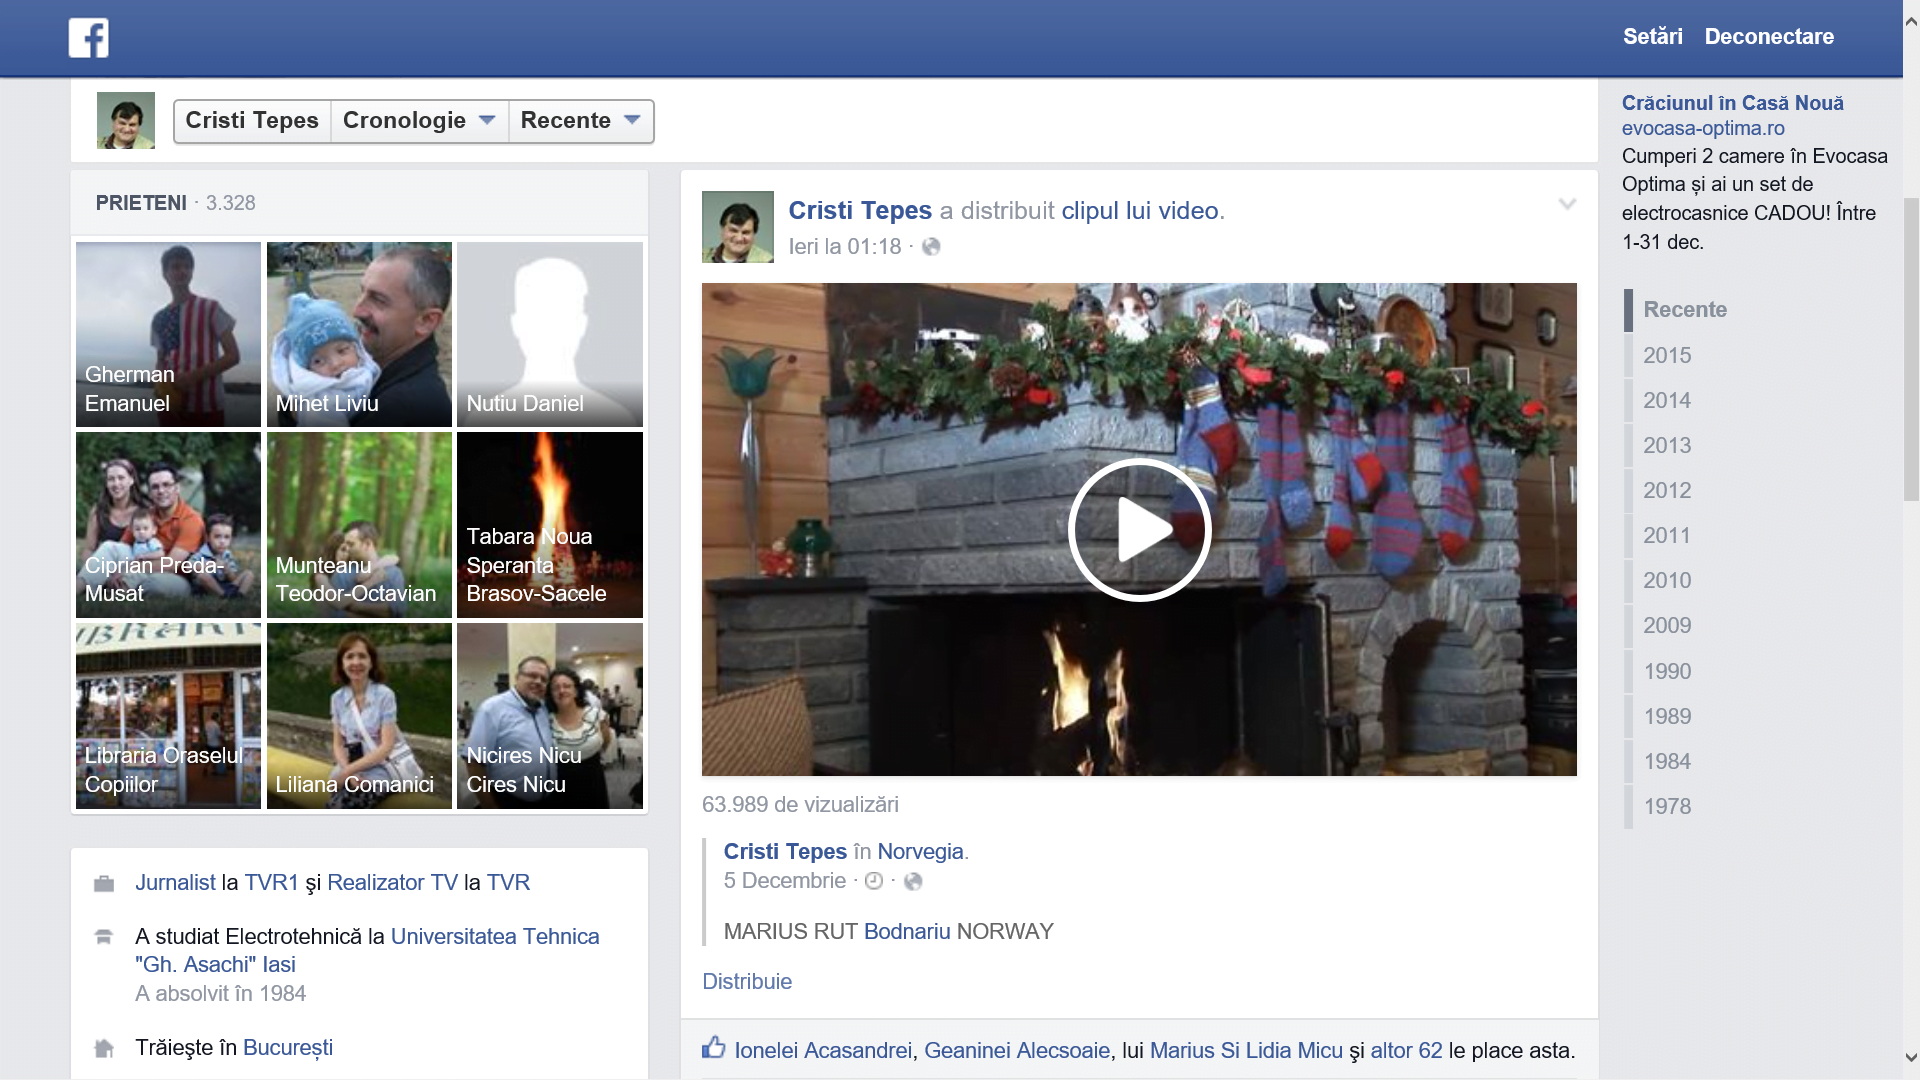 Ultima postare a lui Cristi Tepes pe pagina lui Facebook a fost ieri, sambata 12 decembrie 2015 la ora 1 si 18 minute noaptea